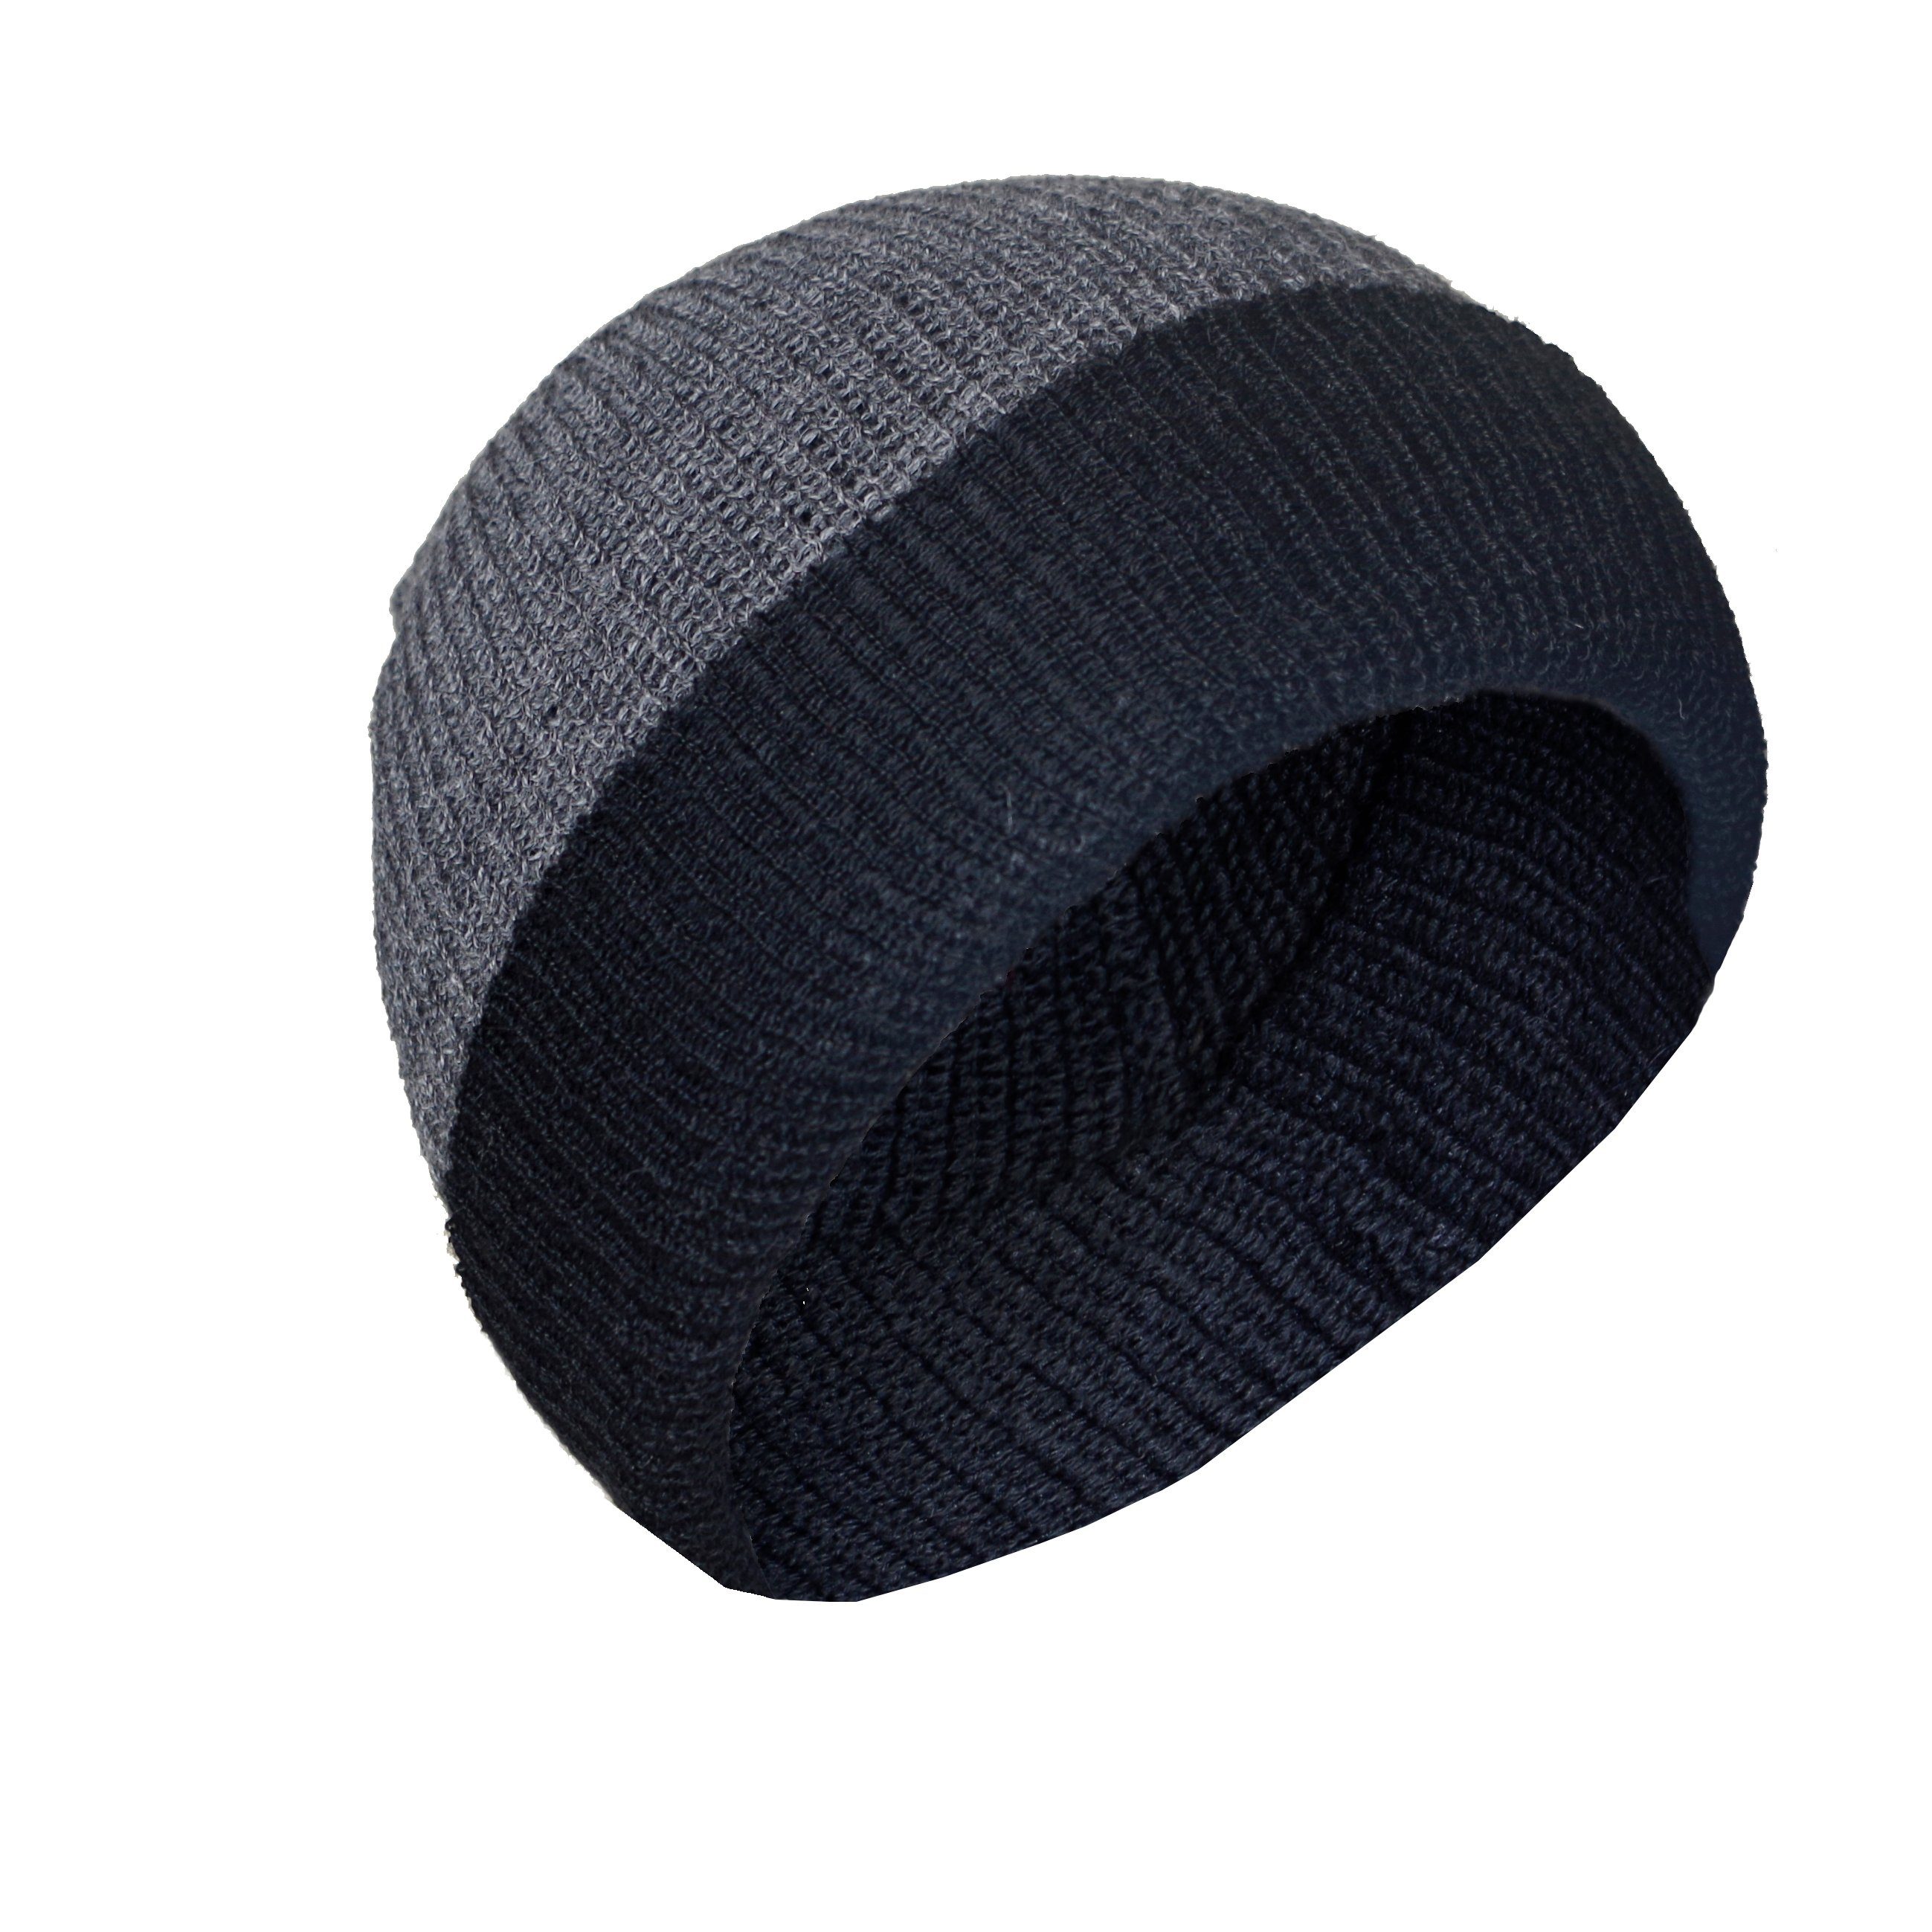 Posh Alpaka Gear / Strickmütze schwarz 100% Mütze Alpakawolle Rettolana aus grau